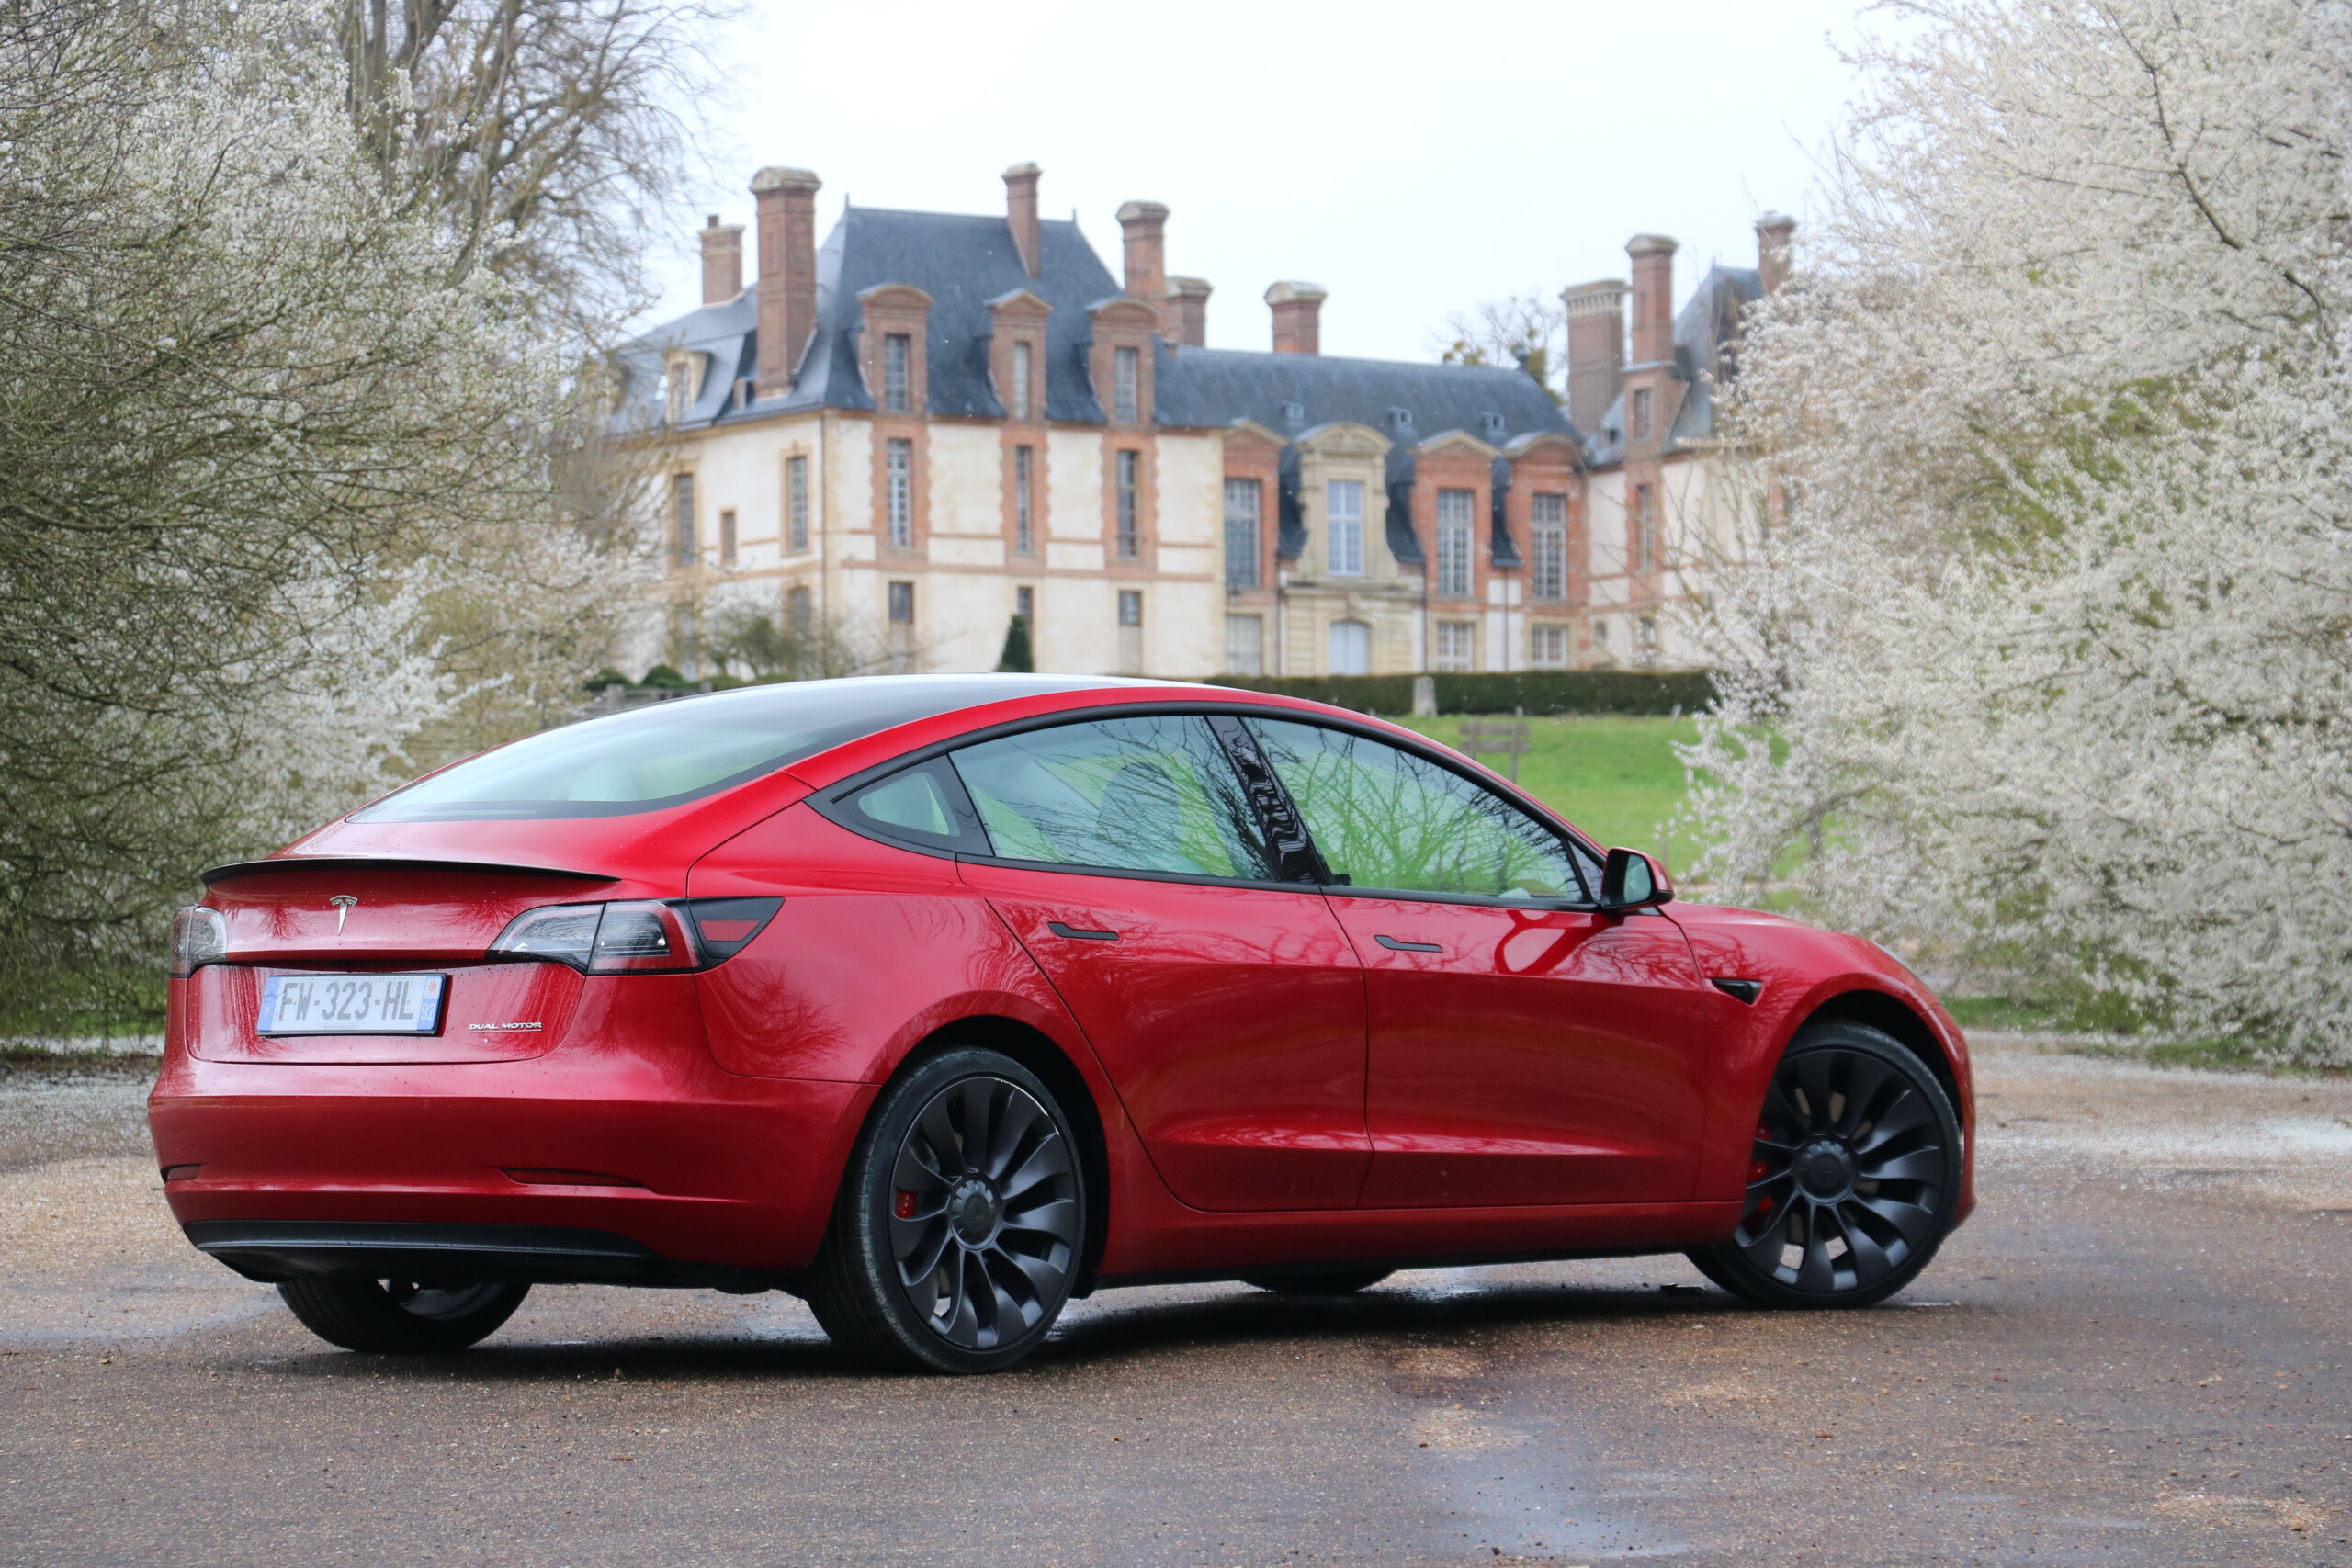 Essai Tesla Model 3 (2021) : notre avis complet - Voitures - Frandroid